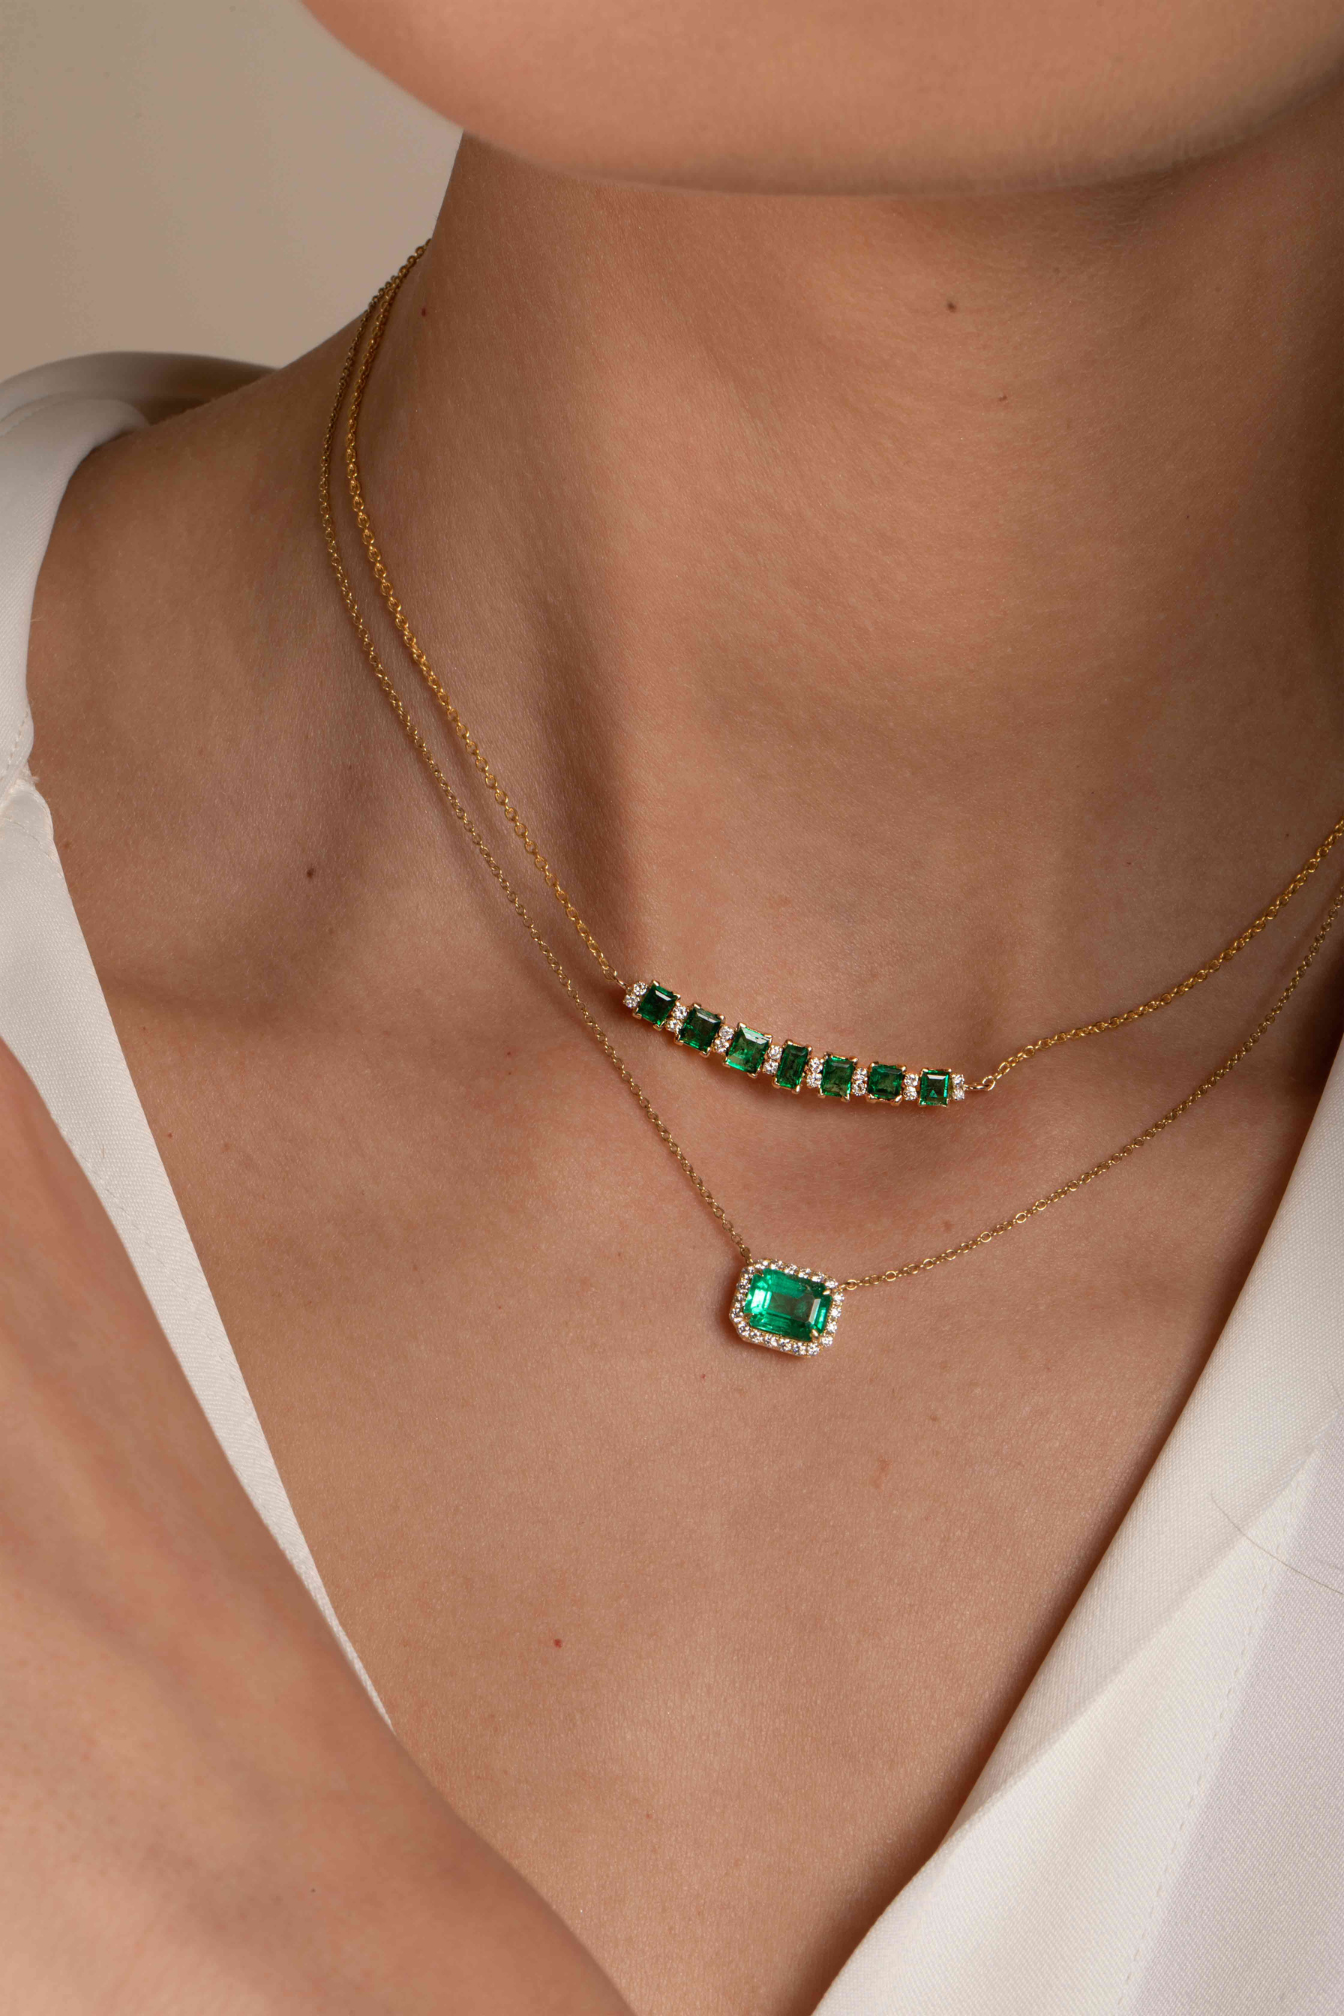 Classic Emerald Pendant